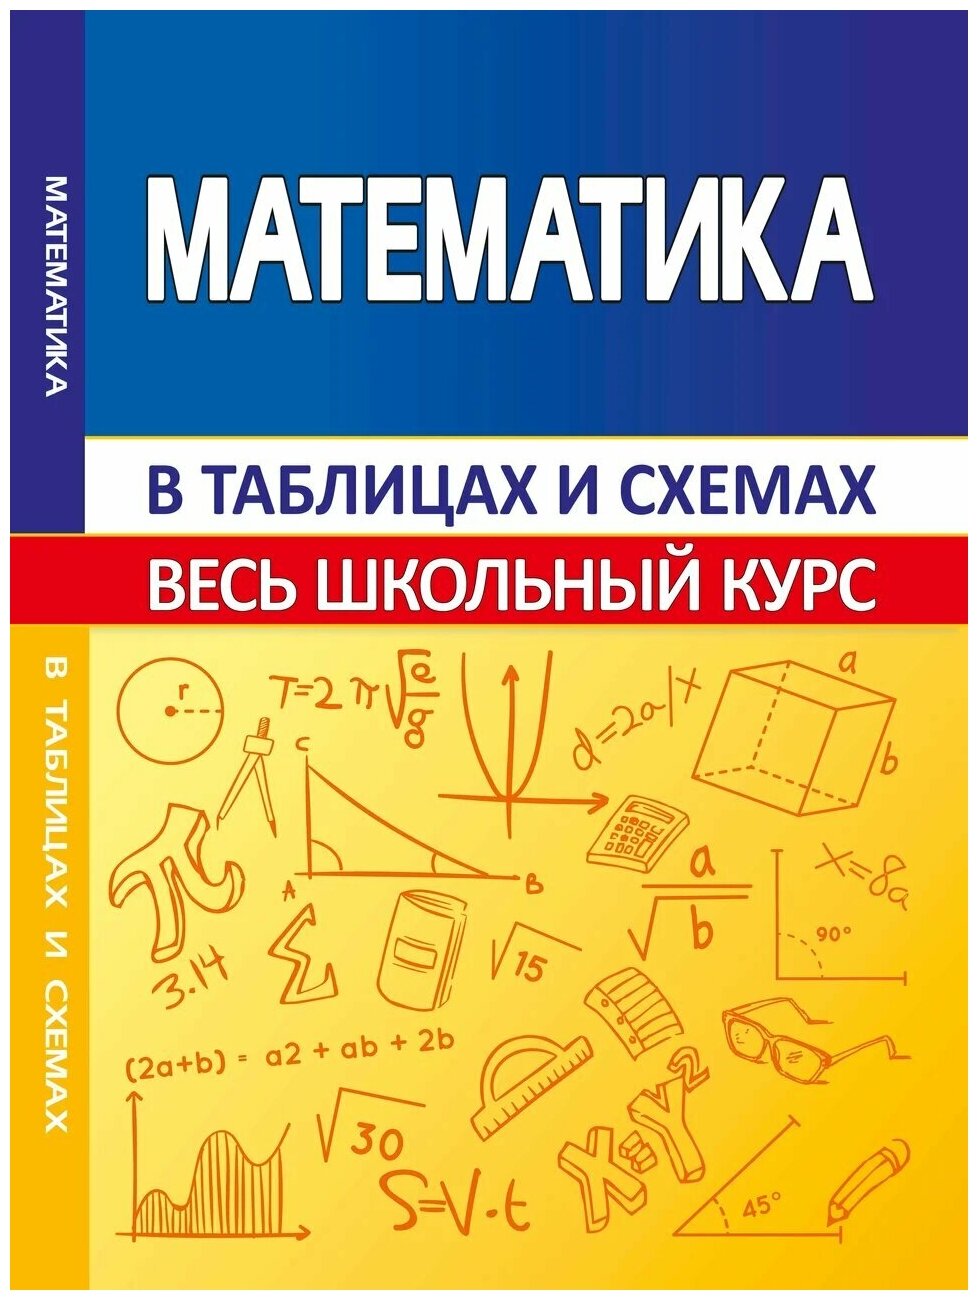 Мошкарева С. М. ВШК. Математика (Весь школьный курс в таблицах и схемах)